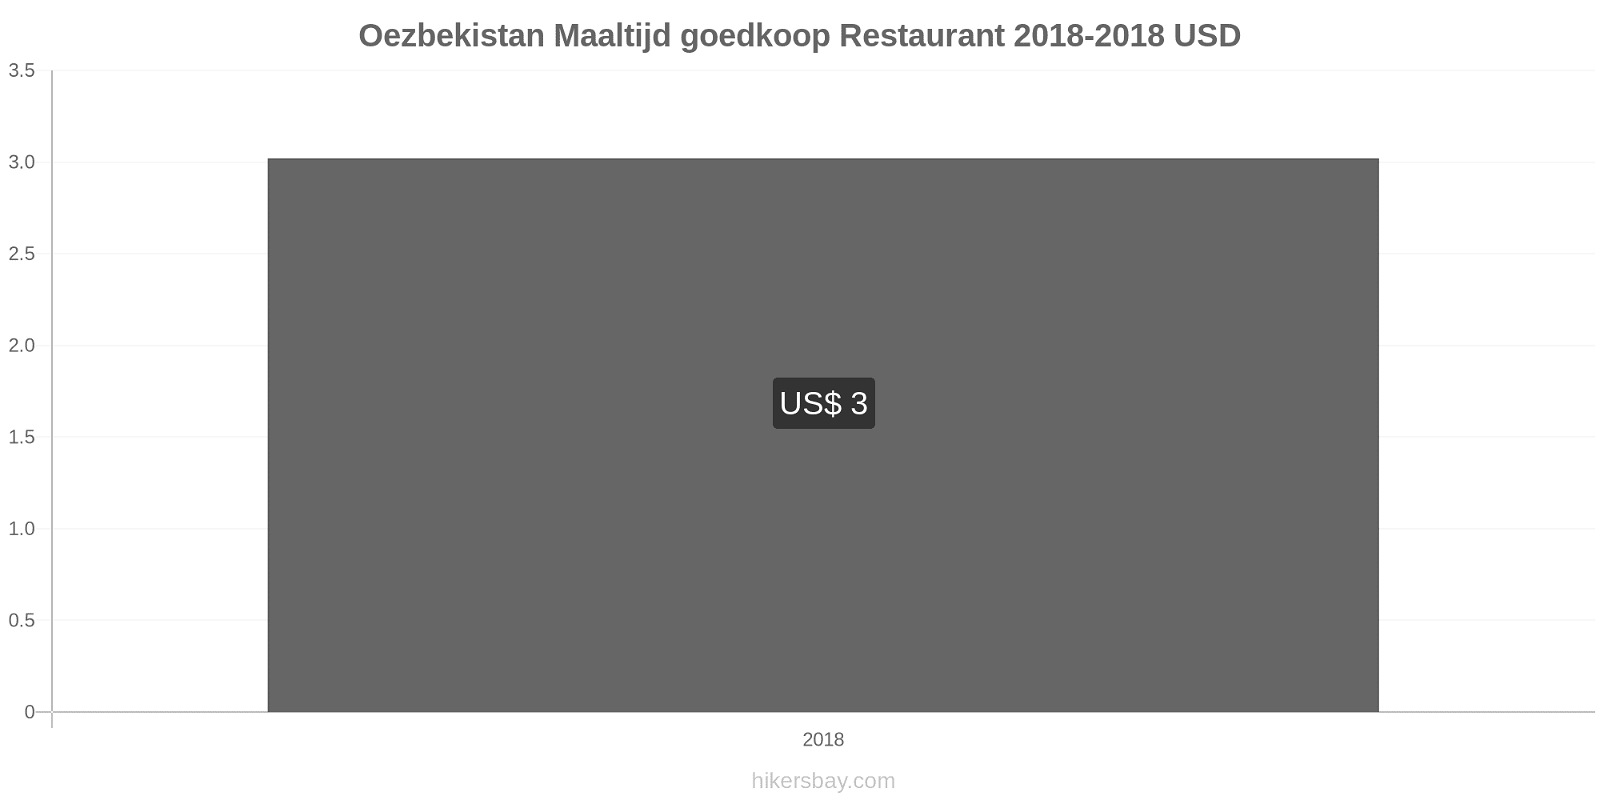 Oezbekistan prijswijzigingen Maaltijd in een goedkoop restaurant hikersbay.com